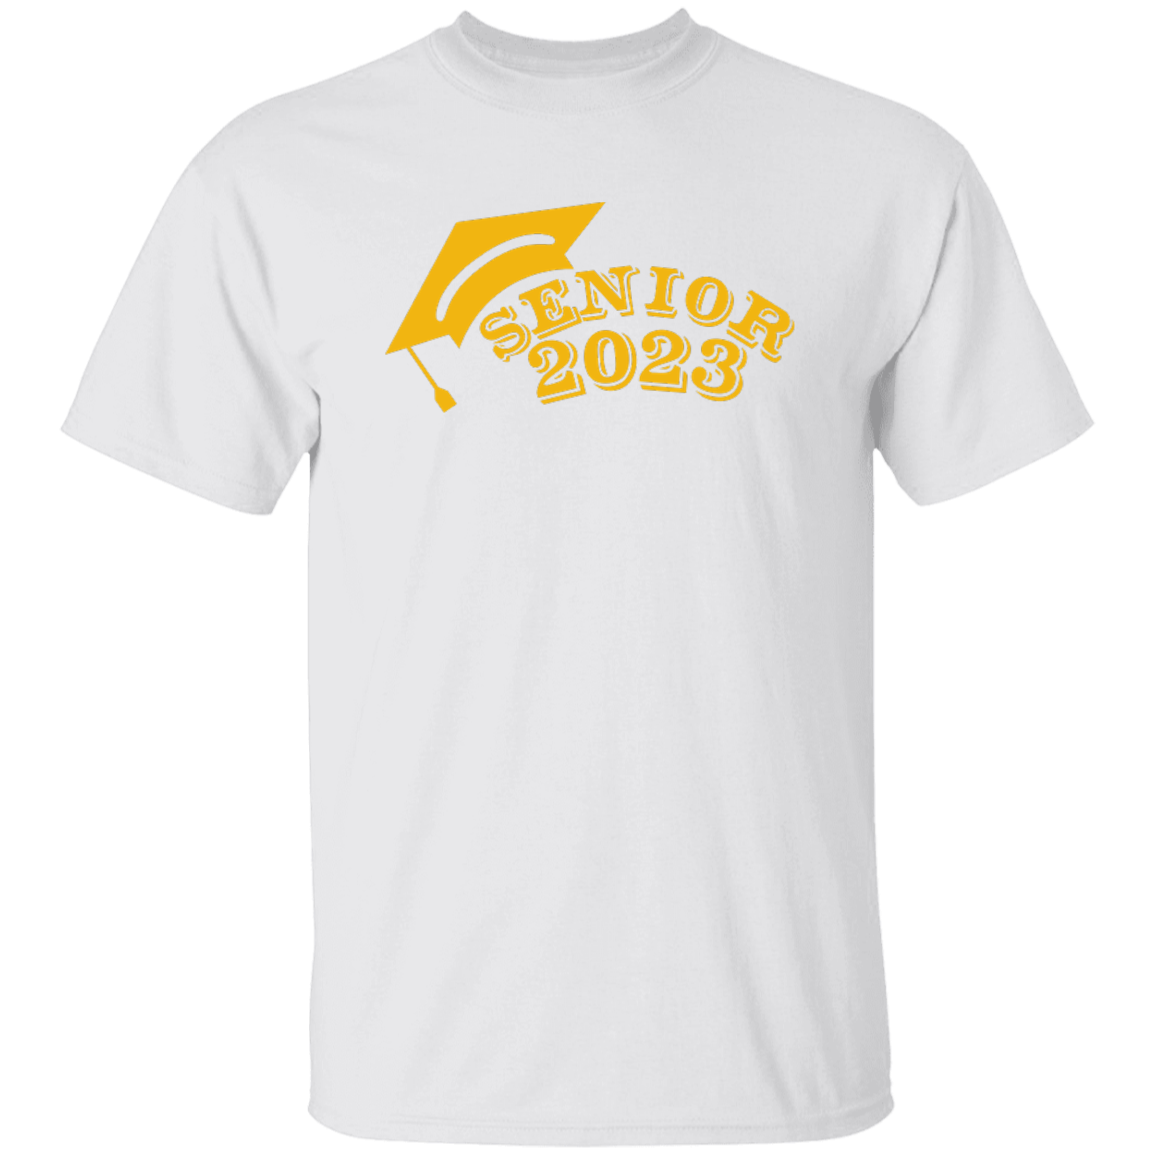 2023 Gold 5.3 oz. T-Shirt